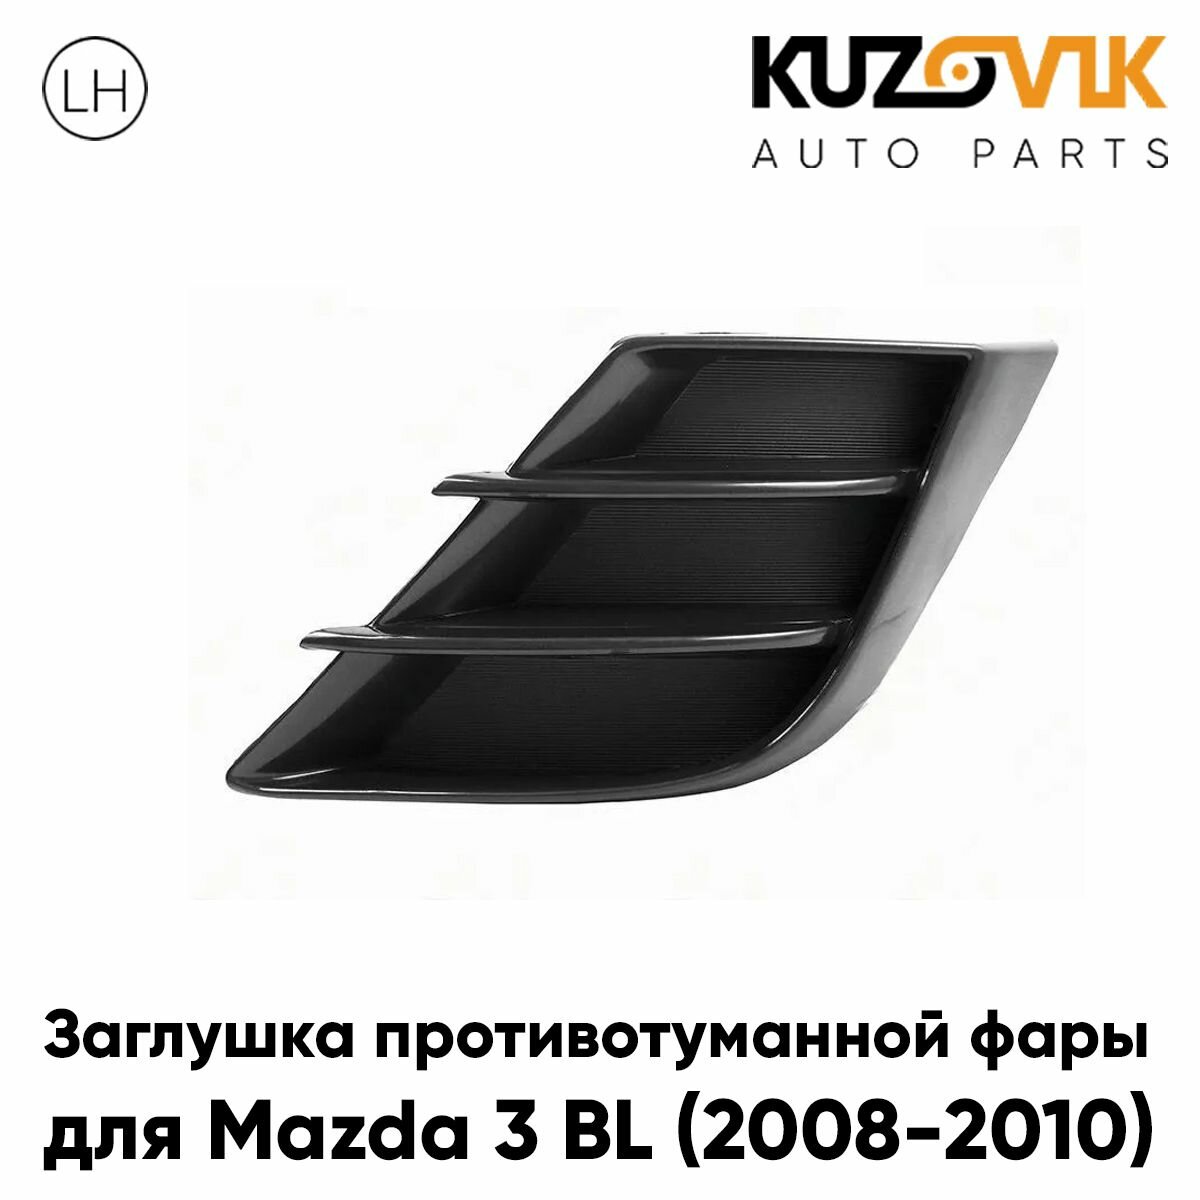 Заглушка противотуманной фары левая для Мазда Mazda 3 BL (2008-2010) рамка, накладка бампера, туманка, птф